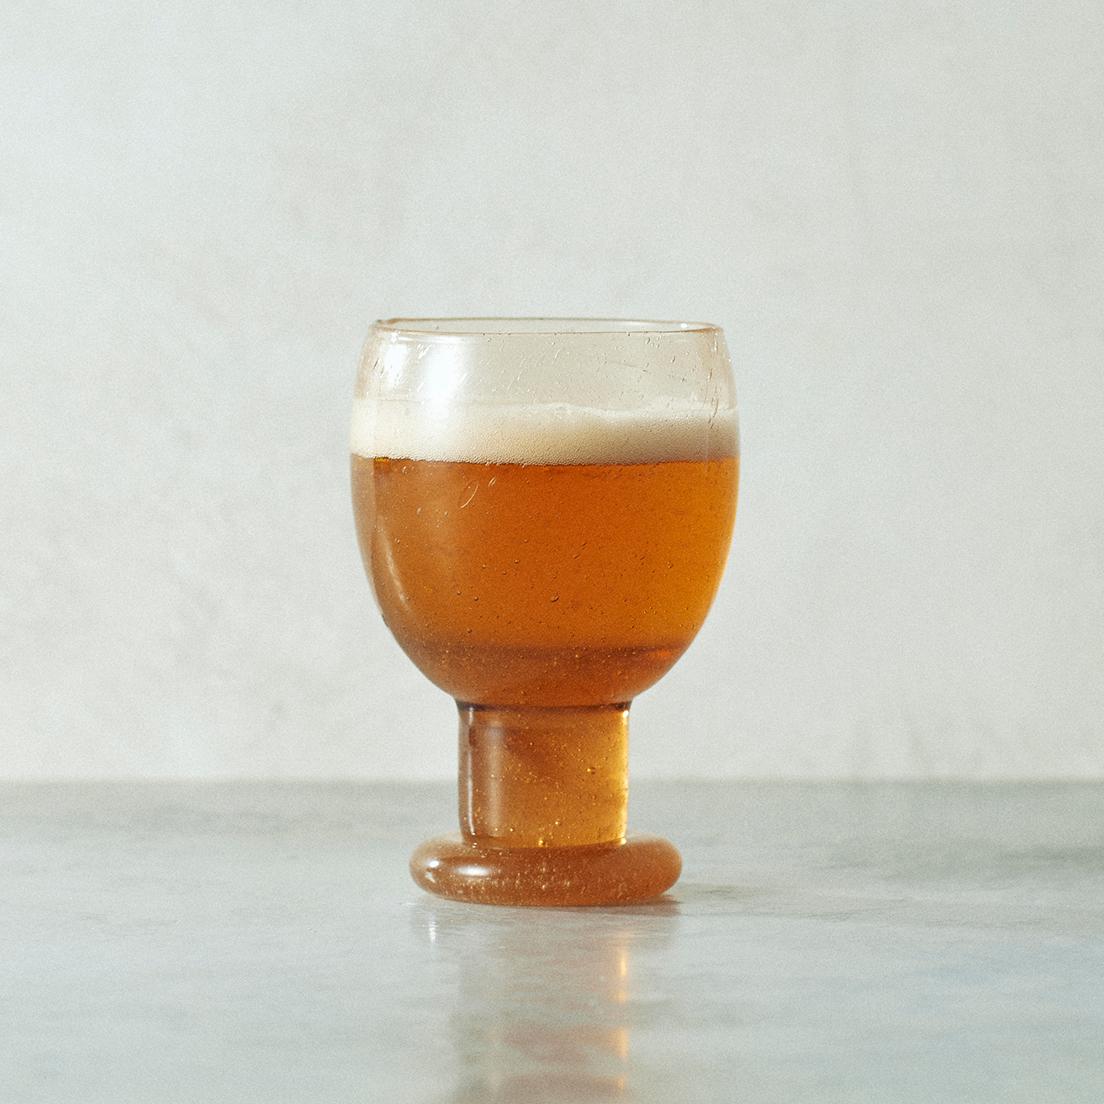 由 Oiva Toikka 在 70 年代设计的啤酒杯“IGLU BEER GLASS 574”。 由 Nuutajarvi 制造。 棕色 φ8.3 × H12.2cm 22,000 日元。 ● 大象